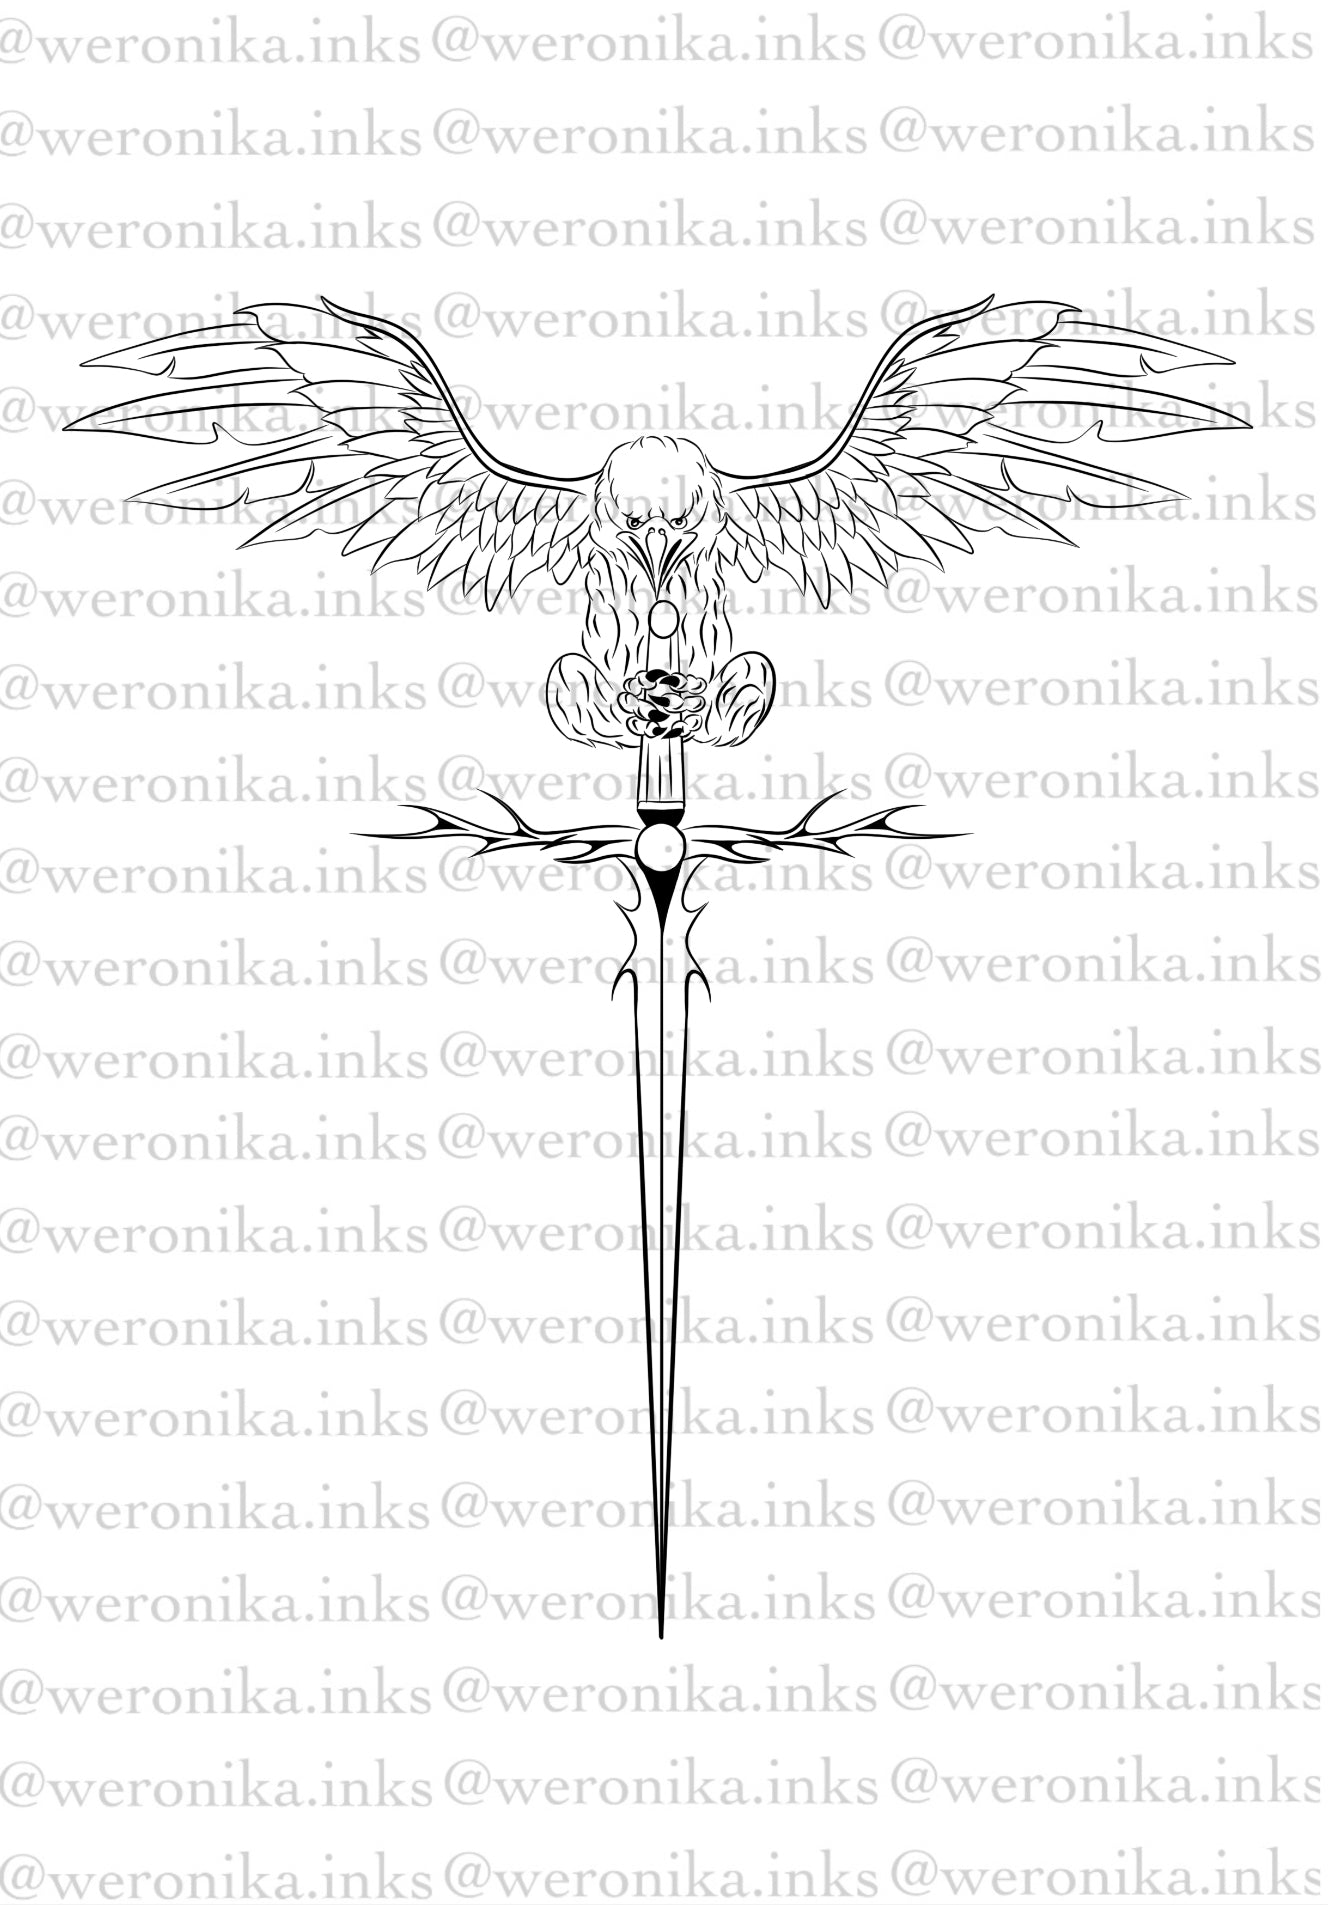 Eagle & sword spine tattoo idea